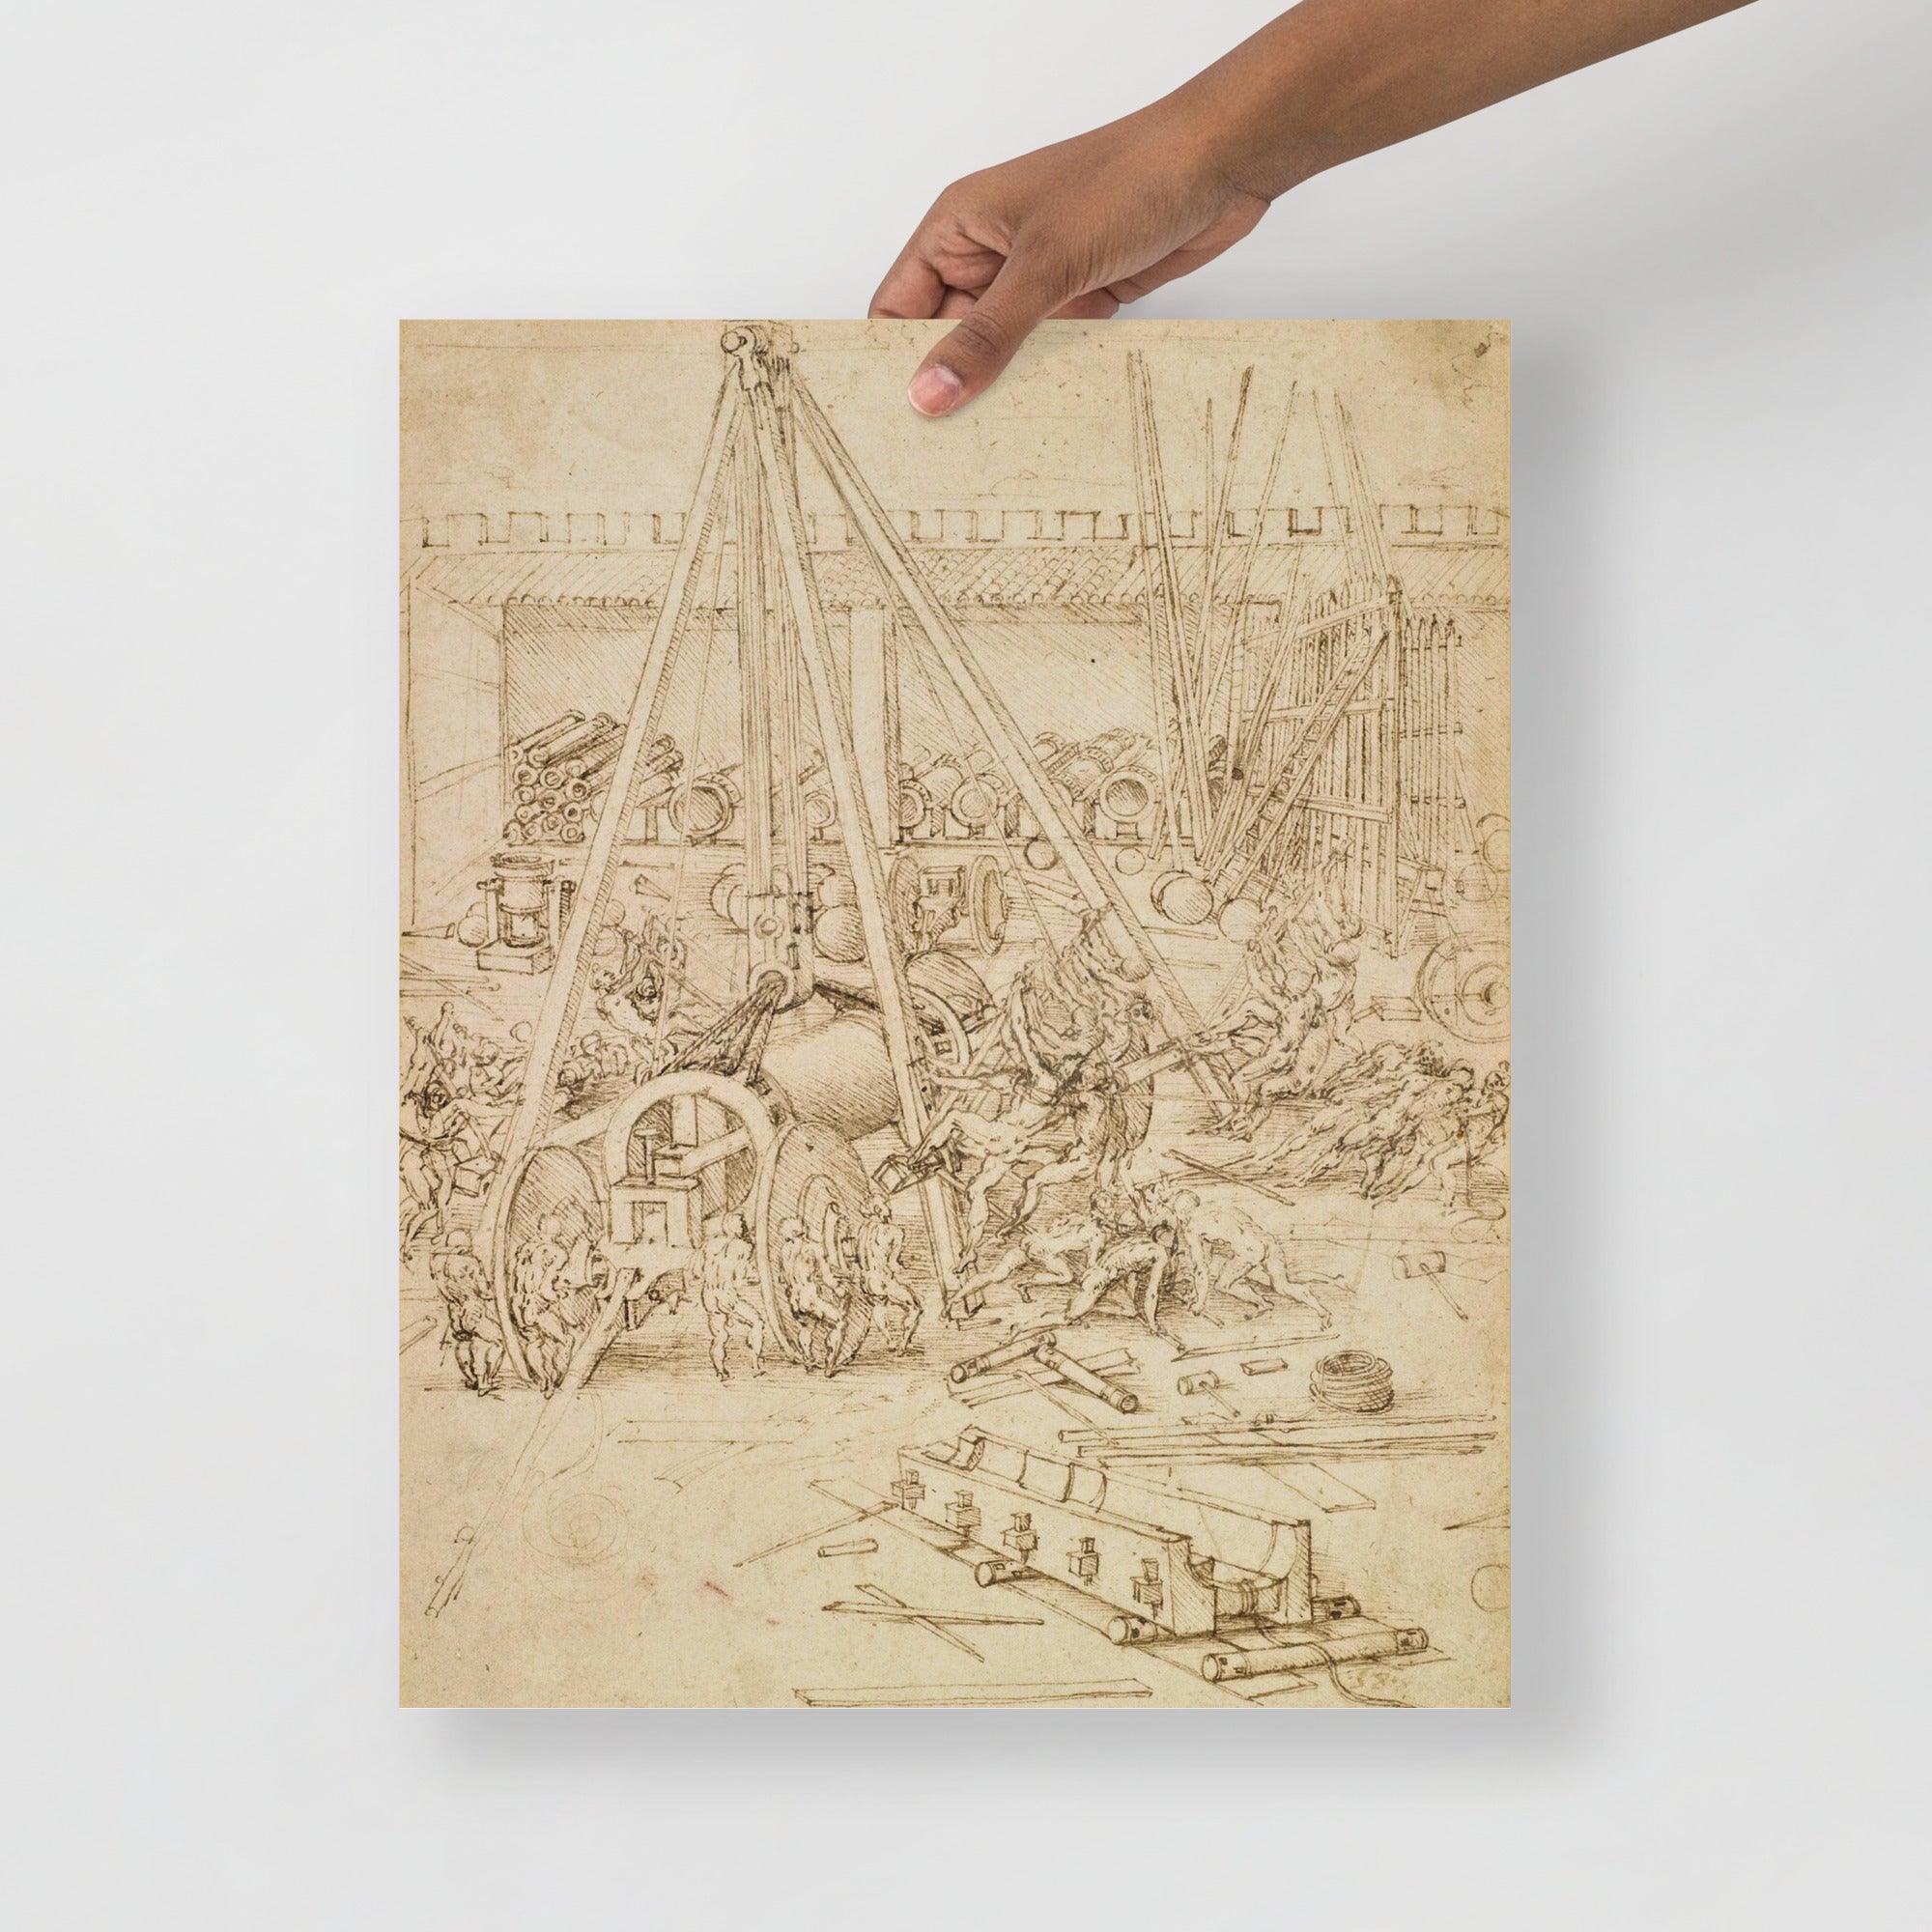 A Scene in an Arsenal by Leonardo Da Vinci poster on a plain backdrop in size 16x20”.